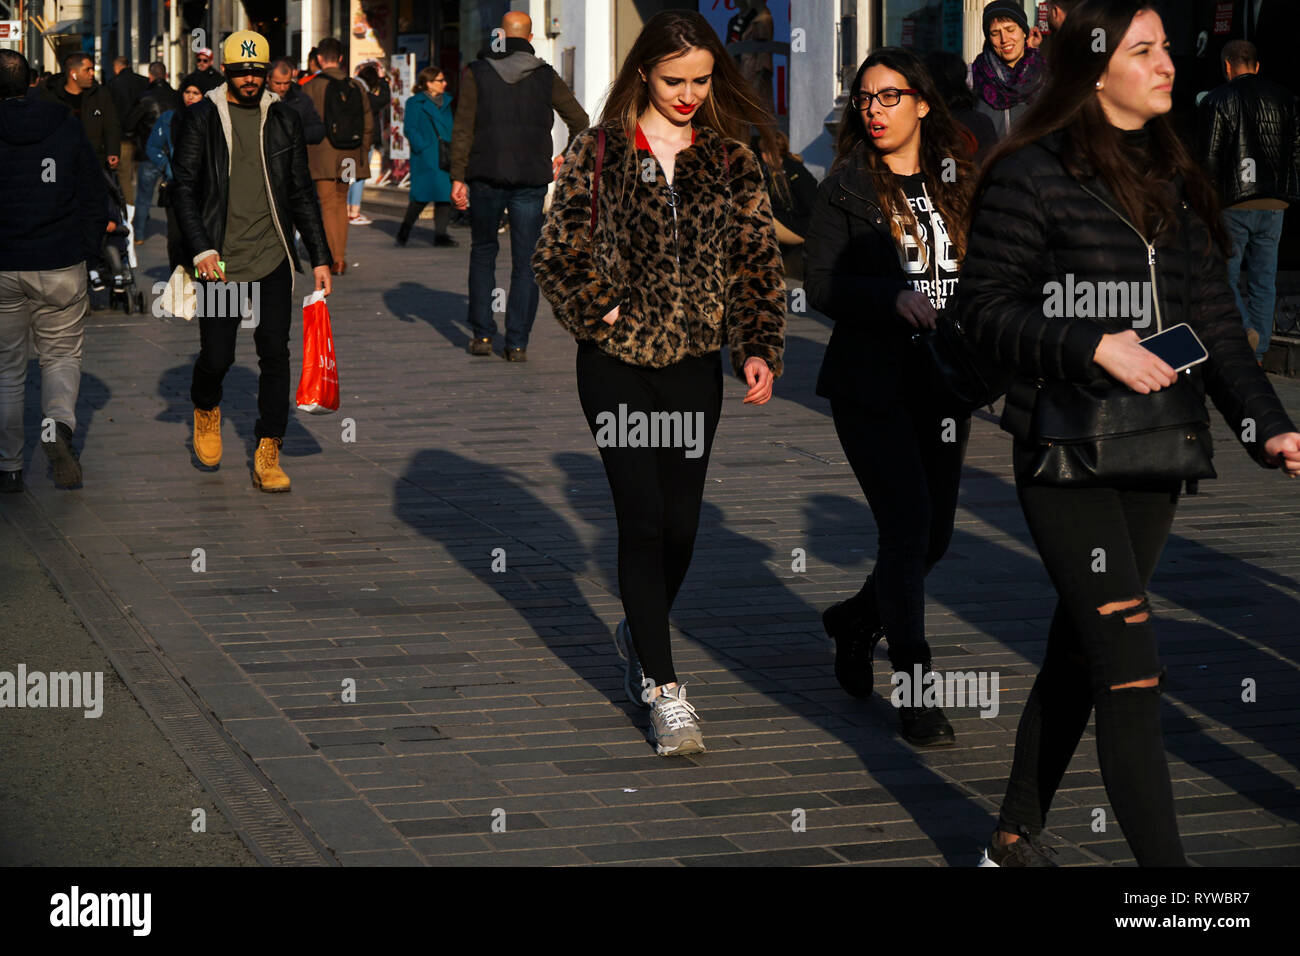 Estambul, Turquía - El 6 de marzo de 2019 : Las mujeres jóvenes en ropa de moda, uno de ellos llevaba una chaqueta estampada de leopardo y de otras personas. Foto de stock